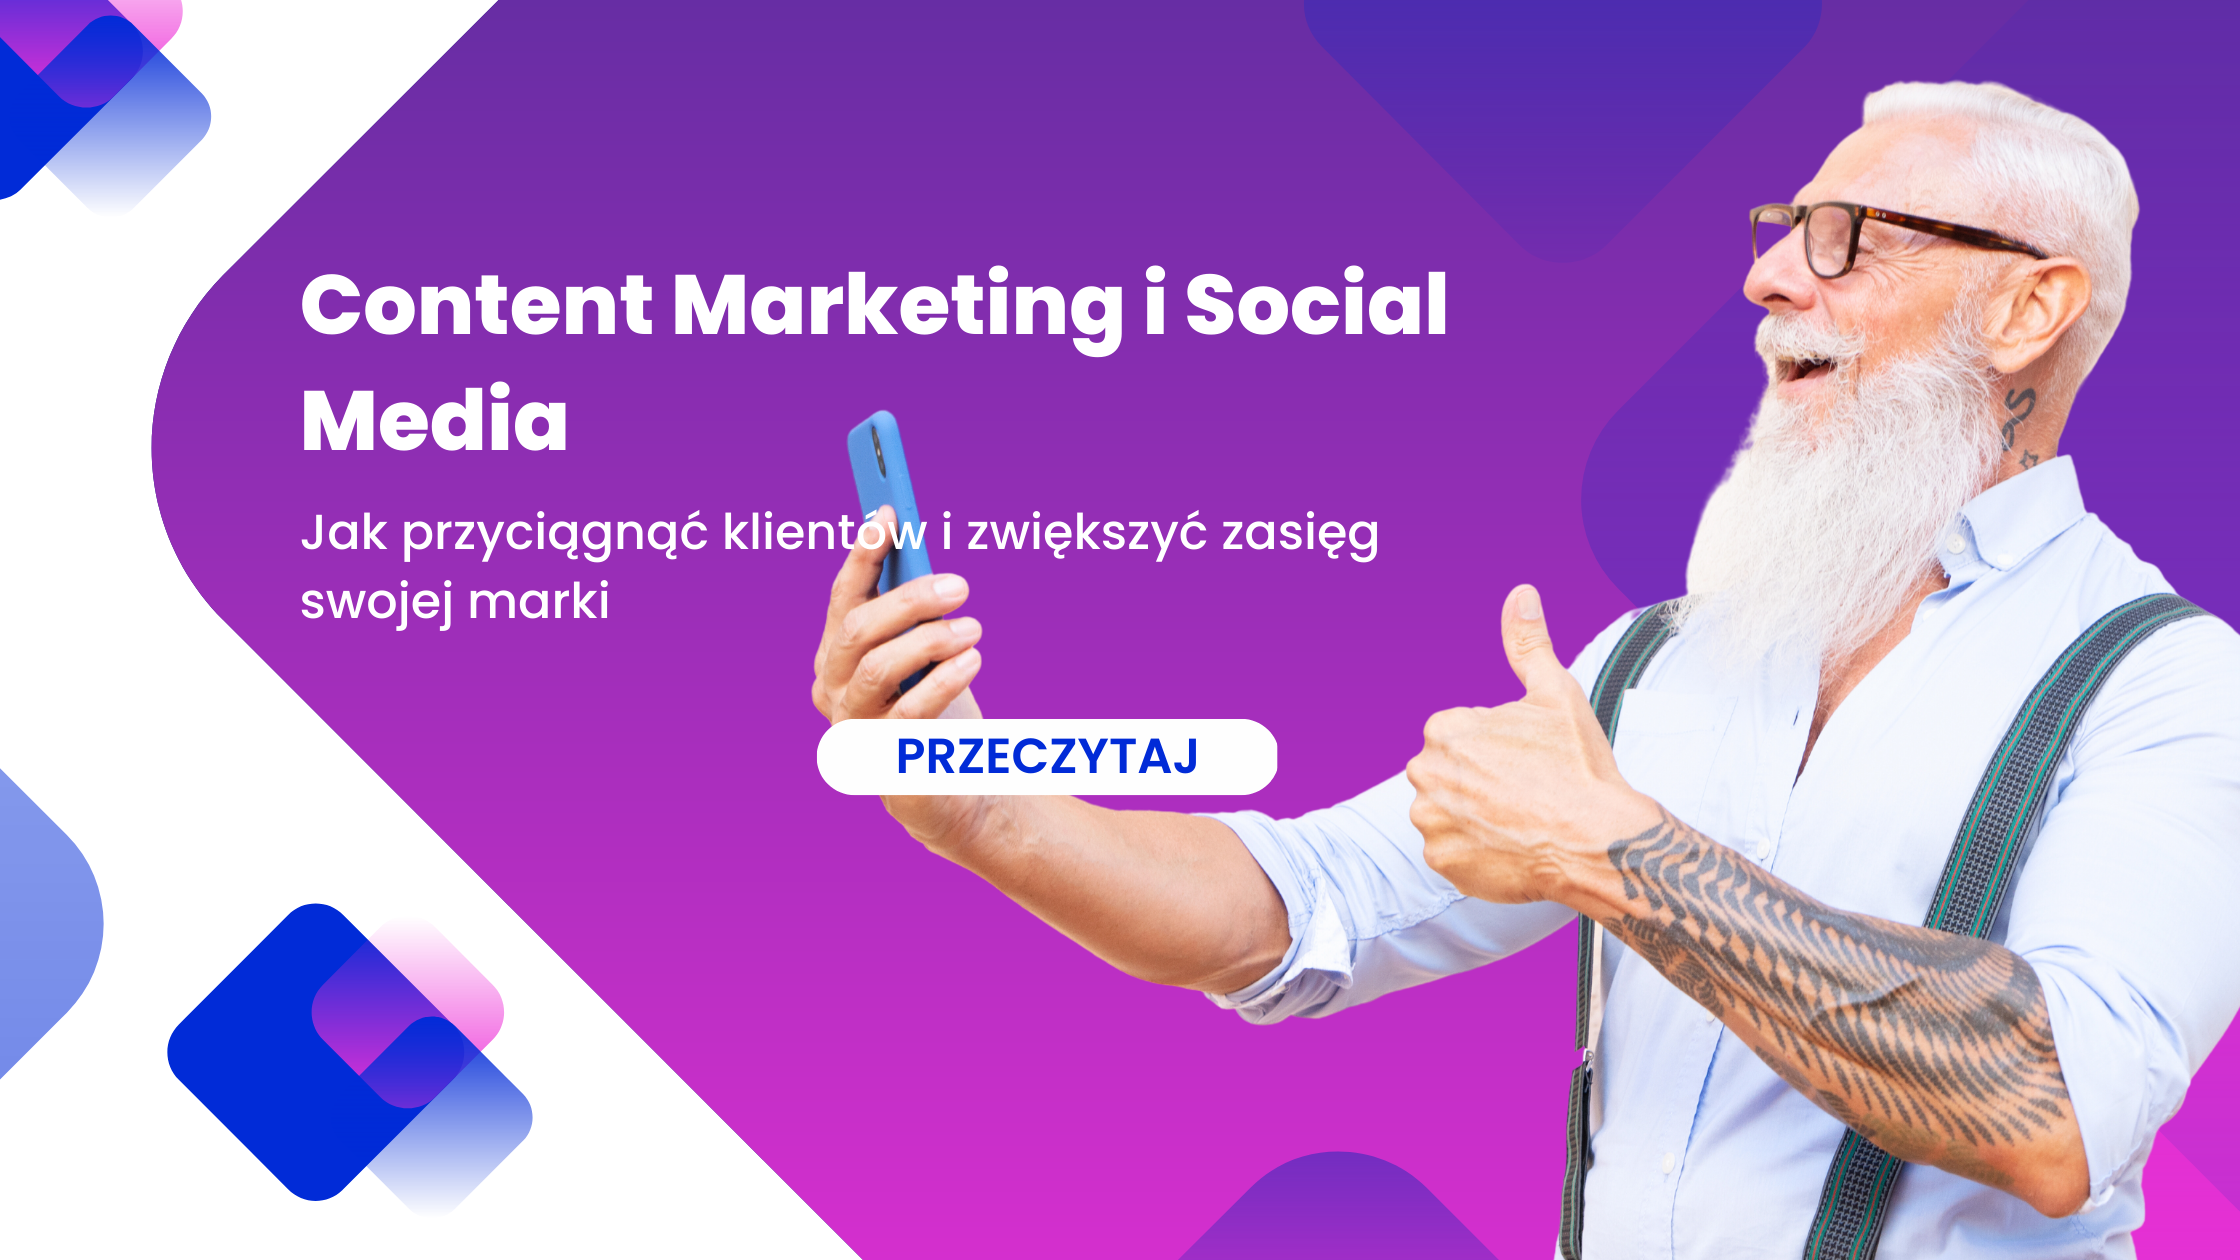 Content Marketing i Social Media – Jak przyciągnąć klientów i zwiększyć zasięg swojej marki